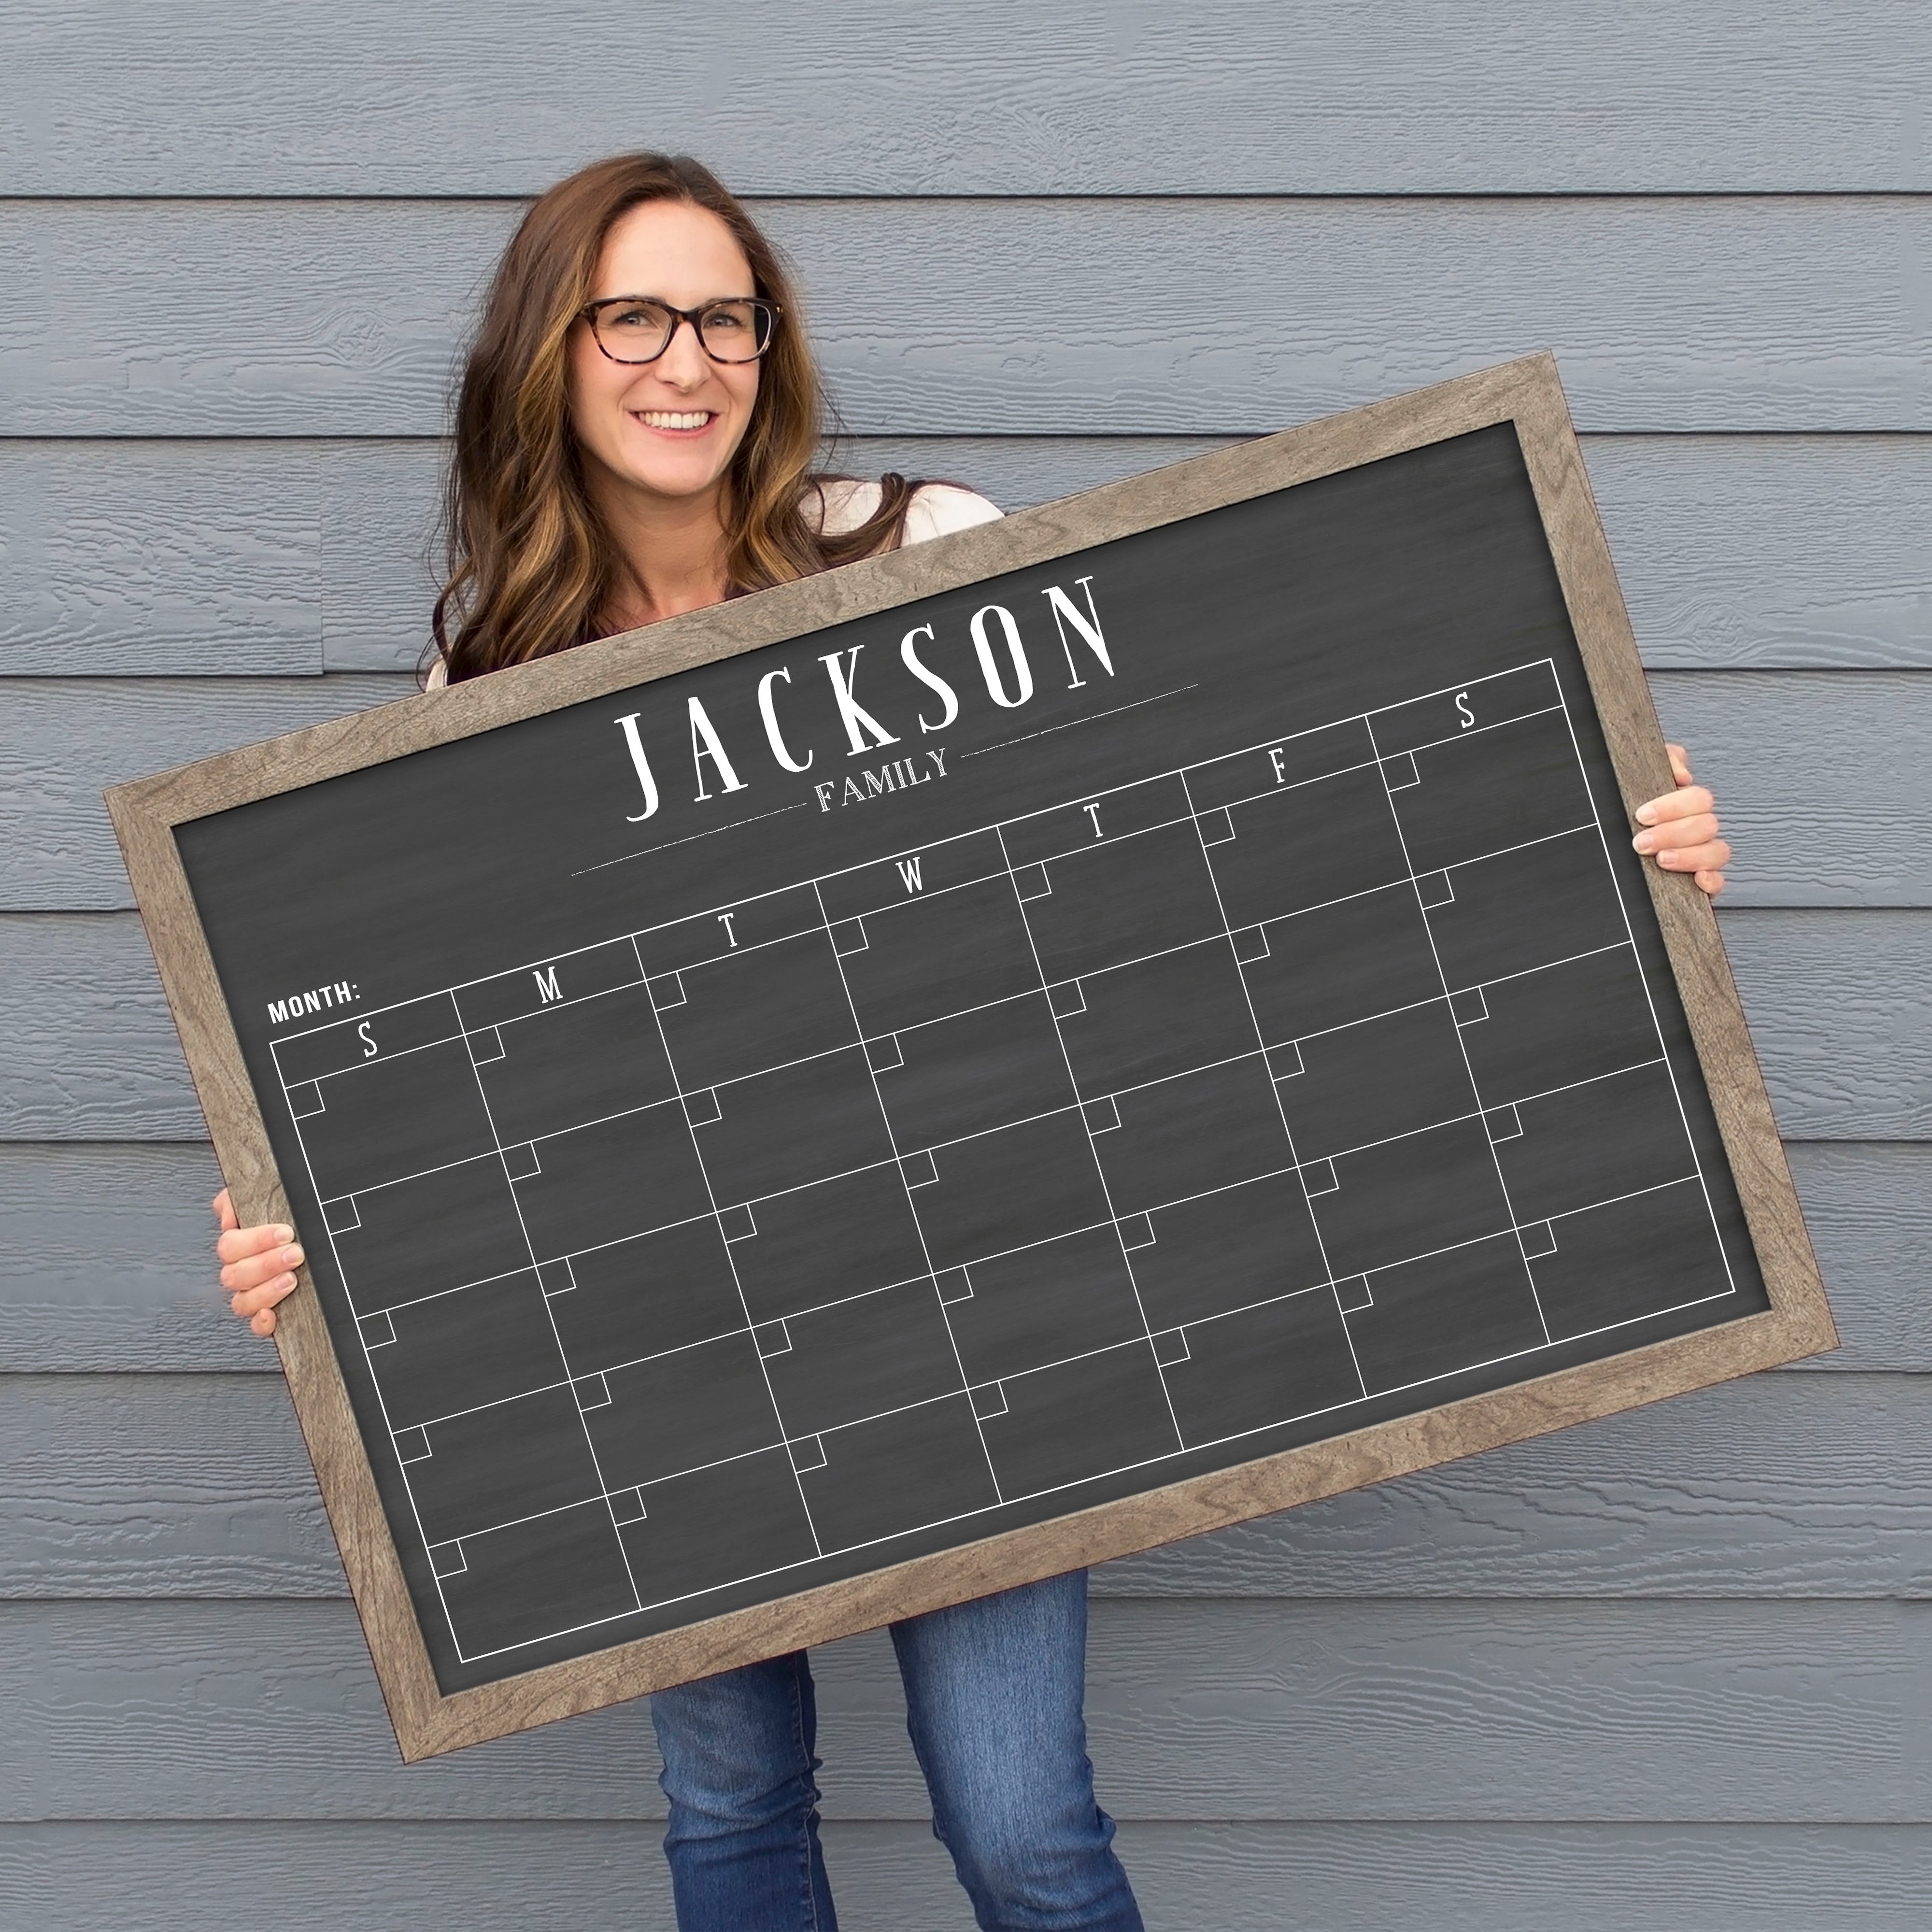 Monthly Framed Chalkboard Calendar | Horizontal Swanson